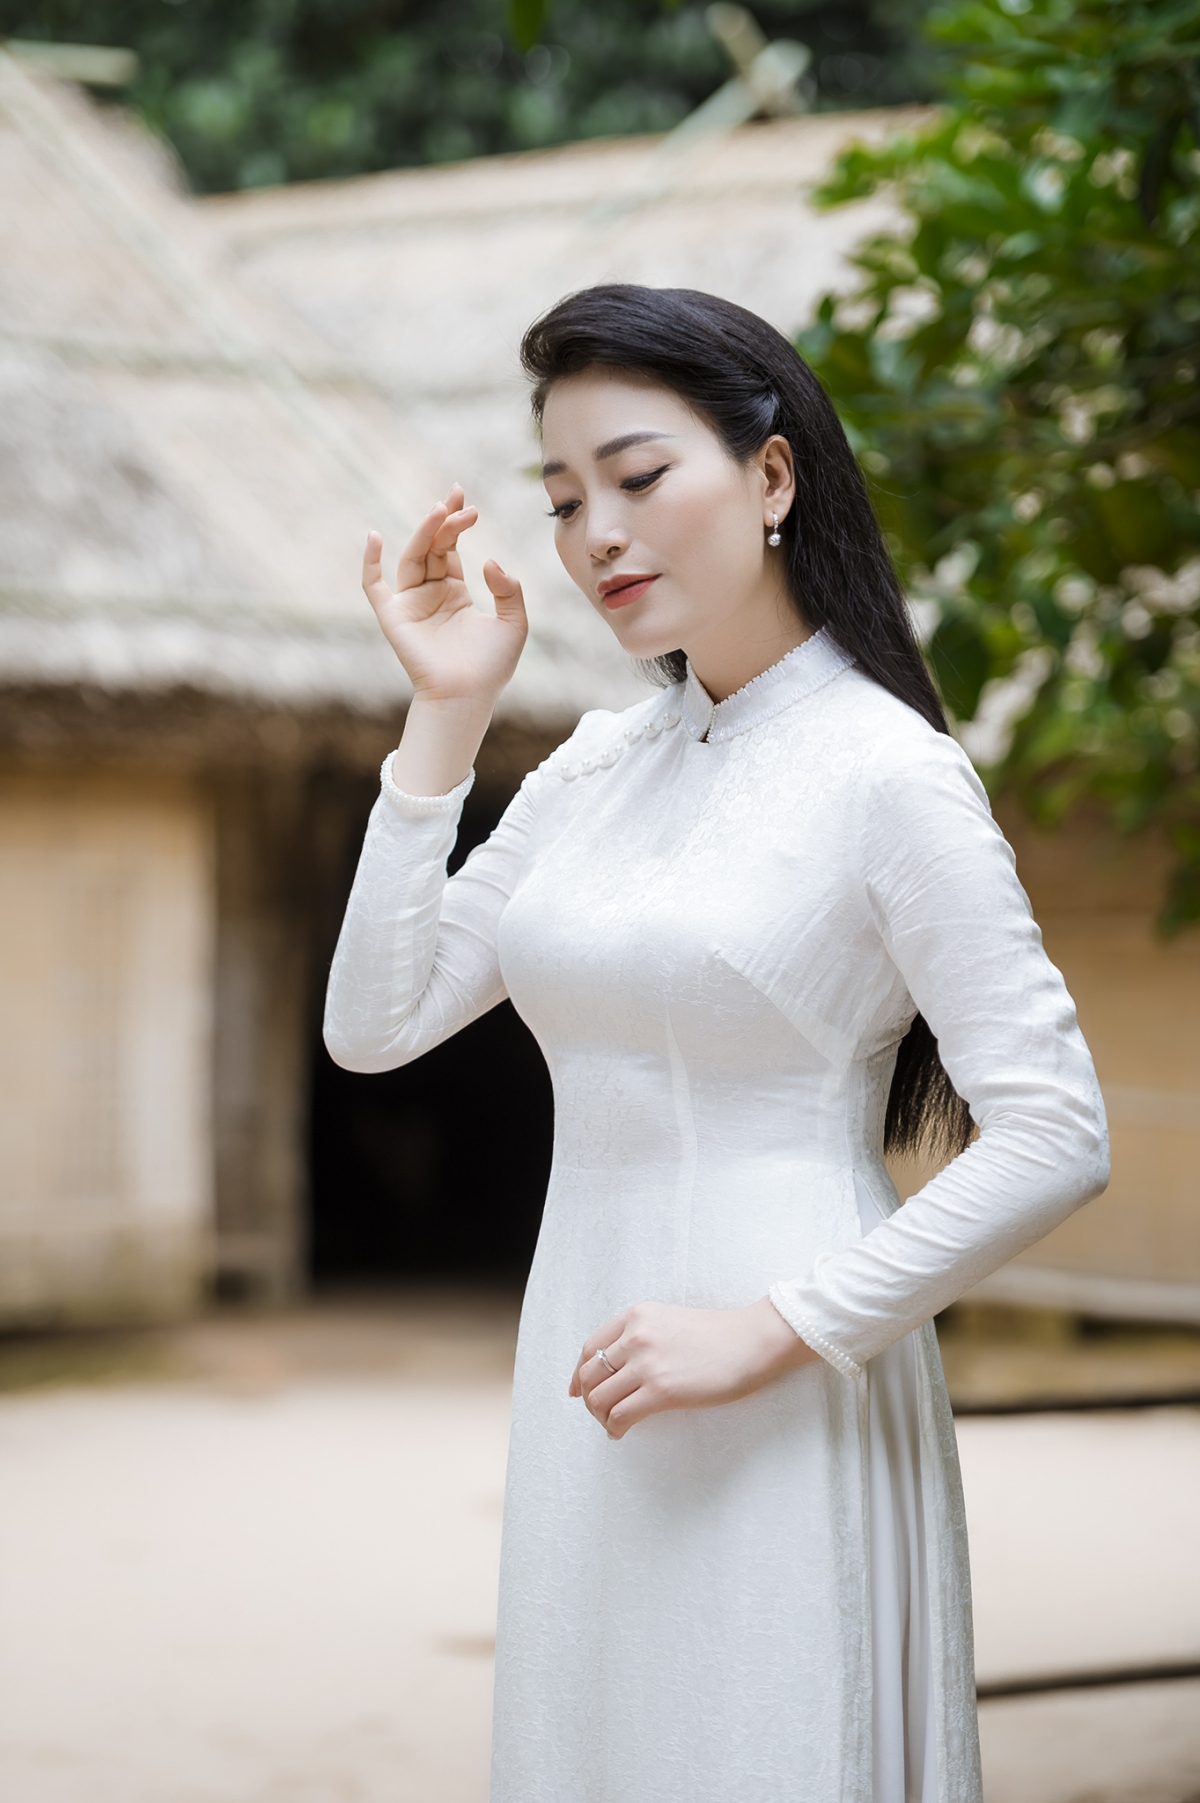 Sao Mai Huyền Trang ra MV quay tại Làng Sen mừng sinh nhật Bác Hồ - Ảnh 1.